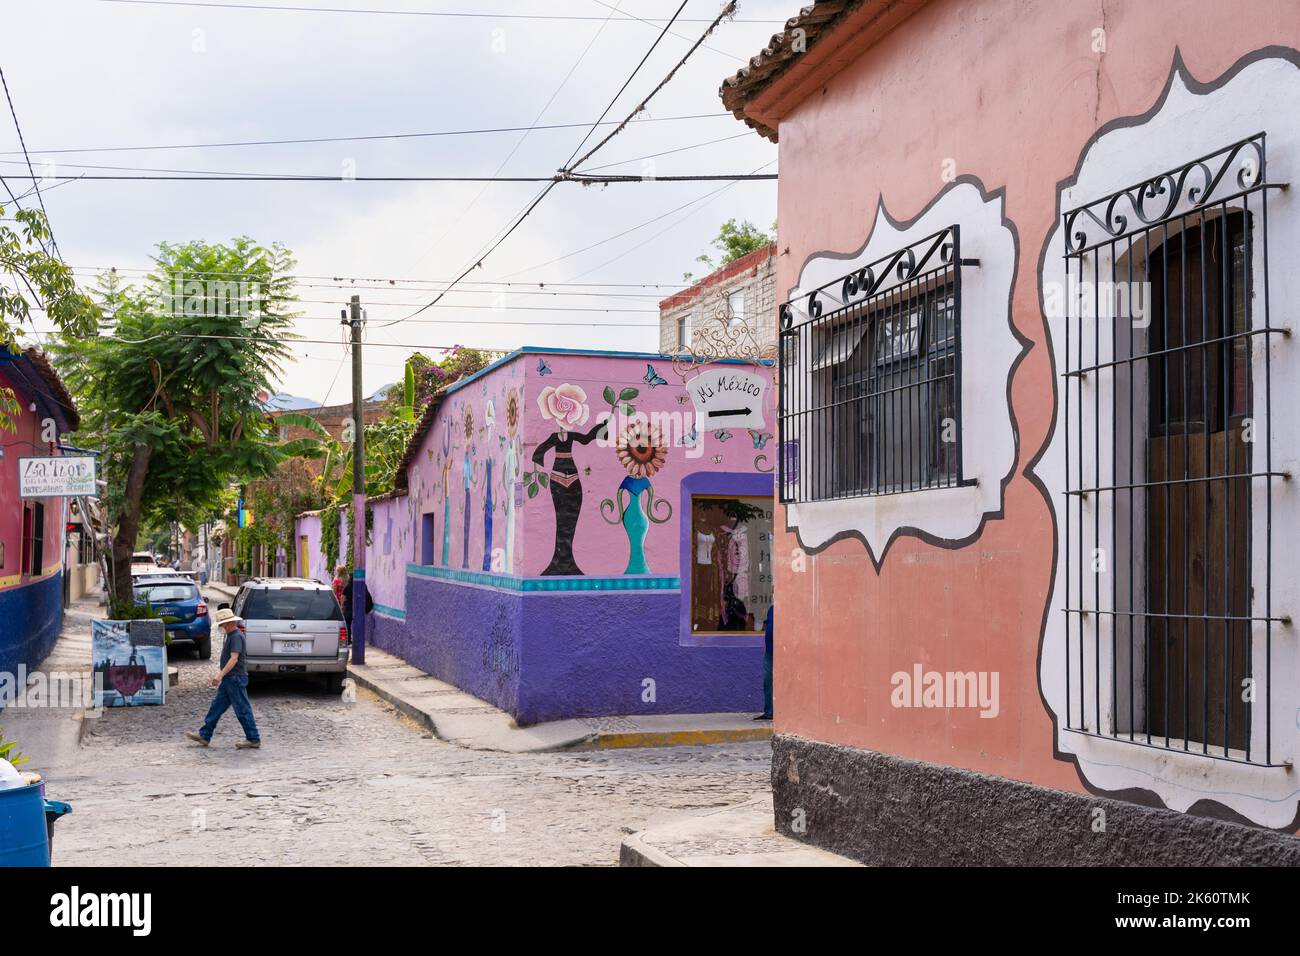 Chapala, Jalisco, Mexique - 10 mai 2021 : façades de bâtiments colorées sur la rue traditionnelle du village mexicain par la route en pierre de pierre de pierre Banque D'Images